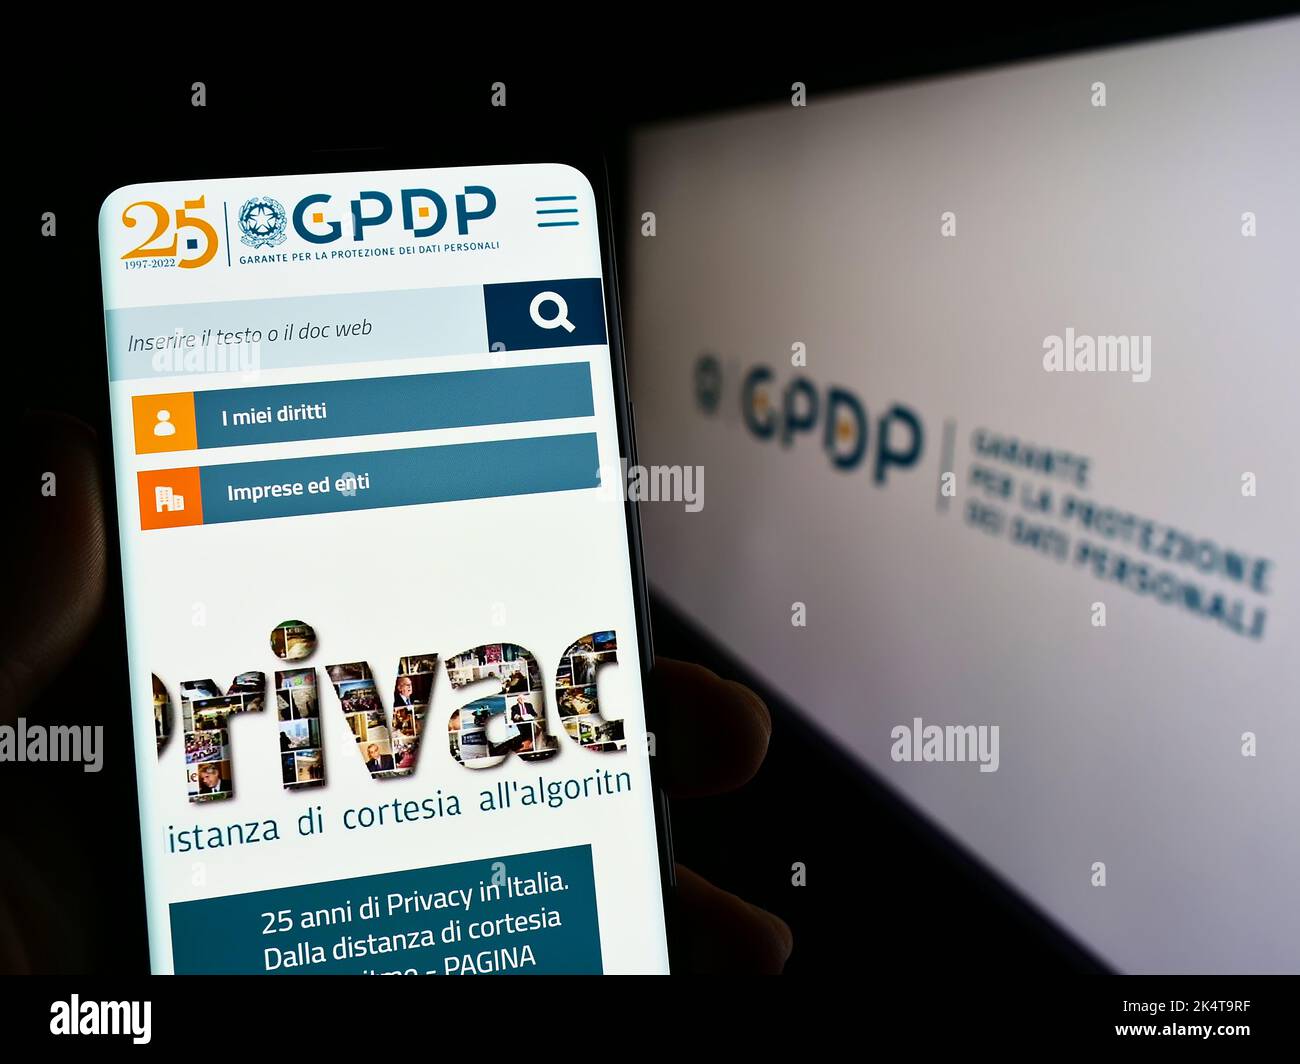 Persona que posee un teléfono móvil con el sitio web de la Autoridad Italiana de Protección de Datos (GPDP) en la pantalla delante del logotipo. Enfoque en el centro de la pantalla del teléfono. Foto de stock